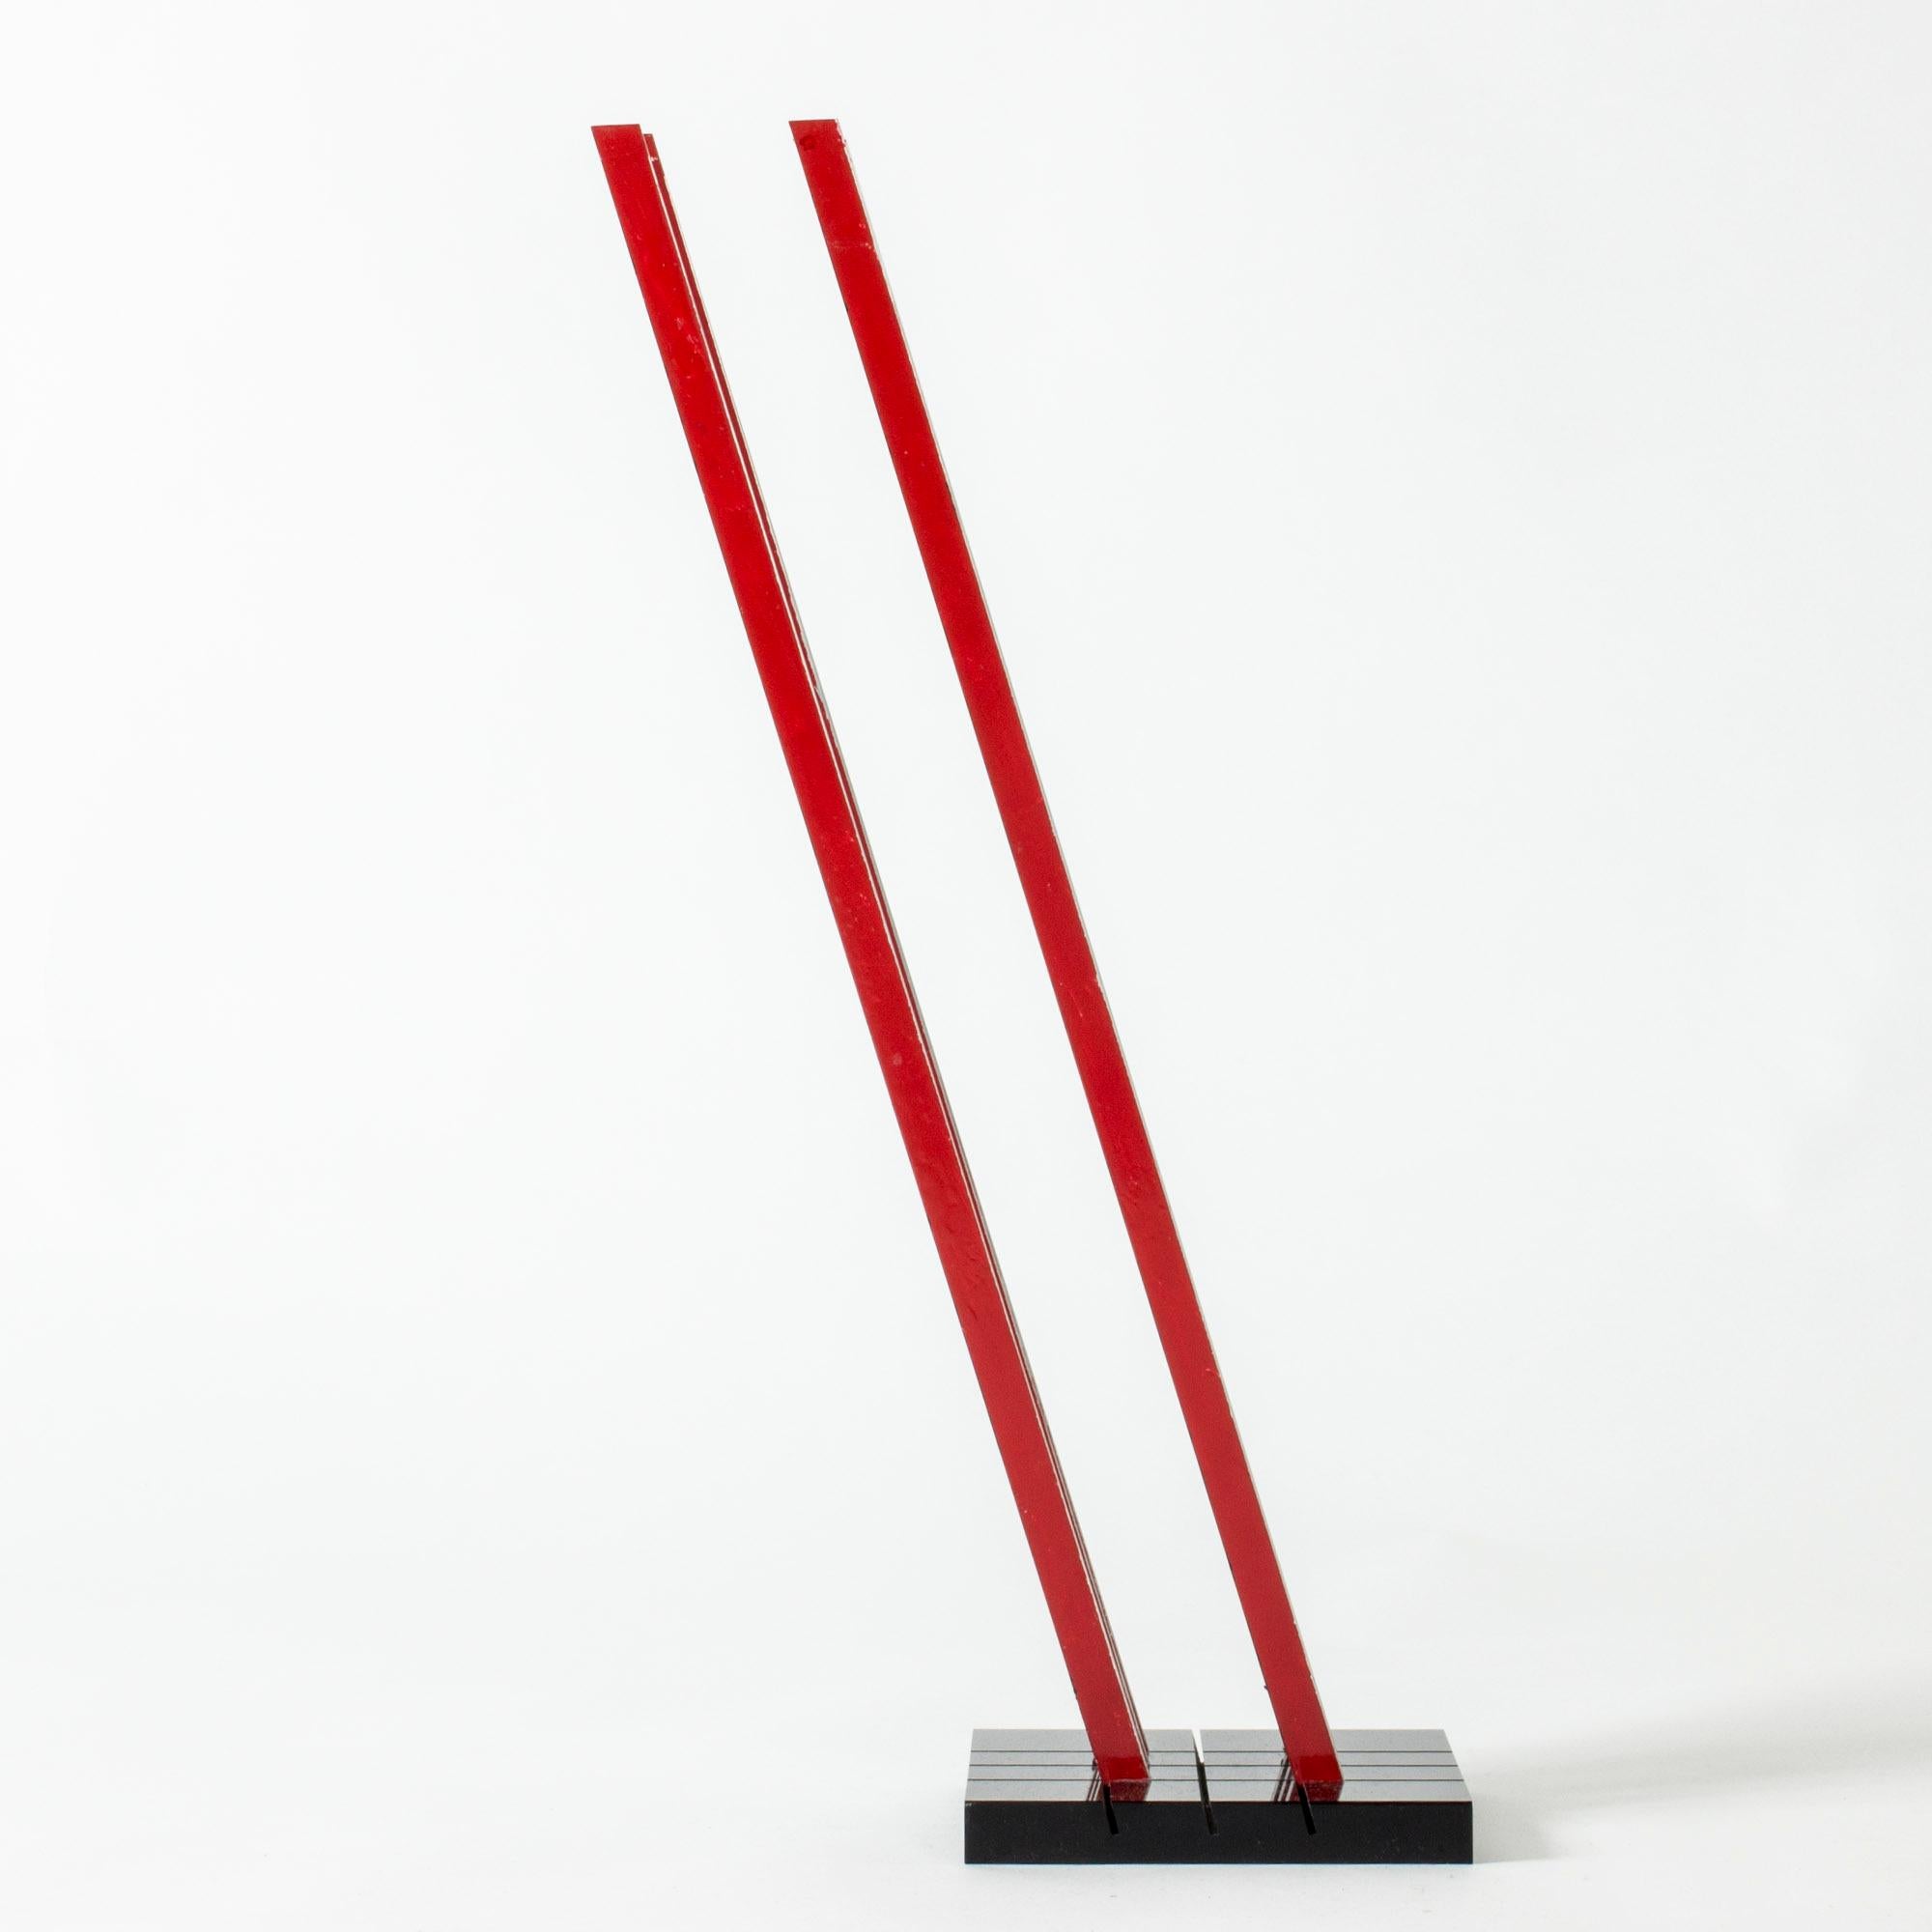 Sculpture étonnante de Lars Erik Falk, faite de fils métalliques inclinés à 73 degrés, comme le veut la signature de Falk. Peint en rouge, bleu, noir, un côté en métal non peint. Superbe jeu de couleurs et d'angles.

Lars Erik Falk (1922-1918) est